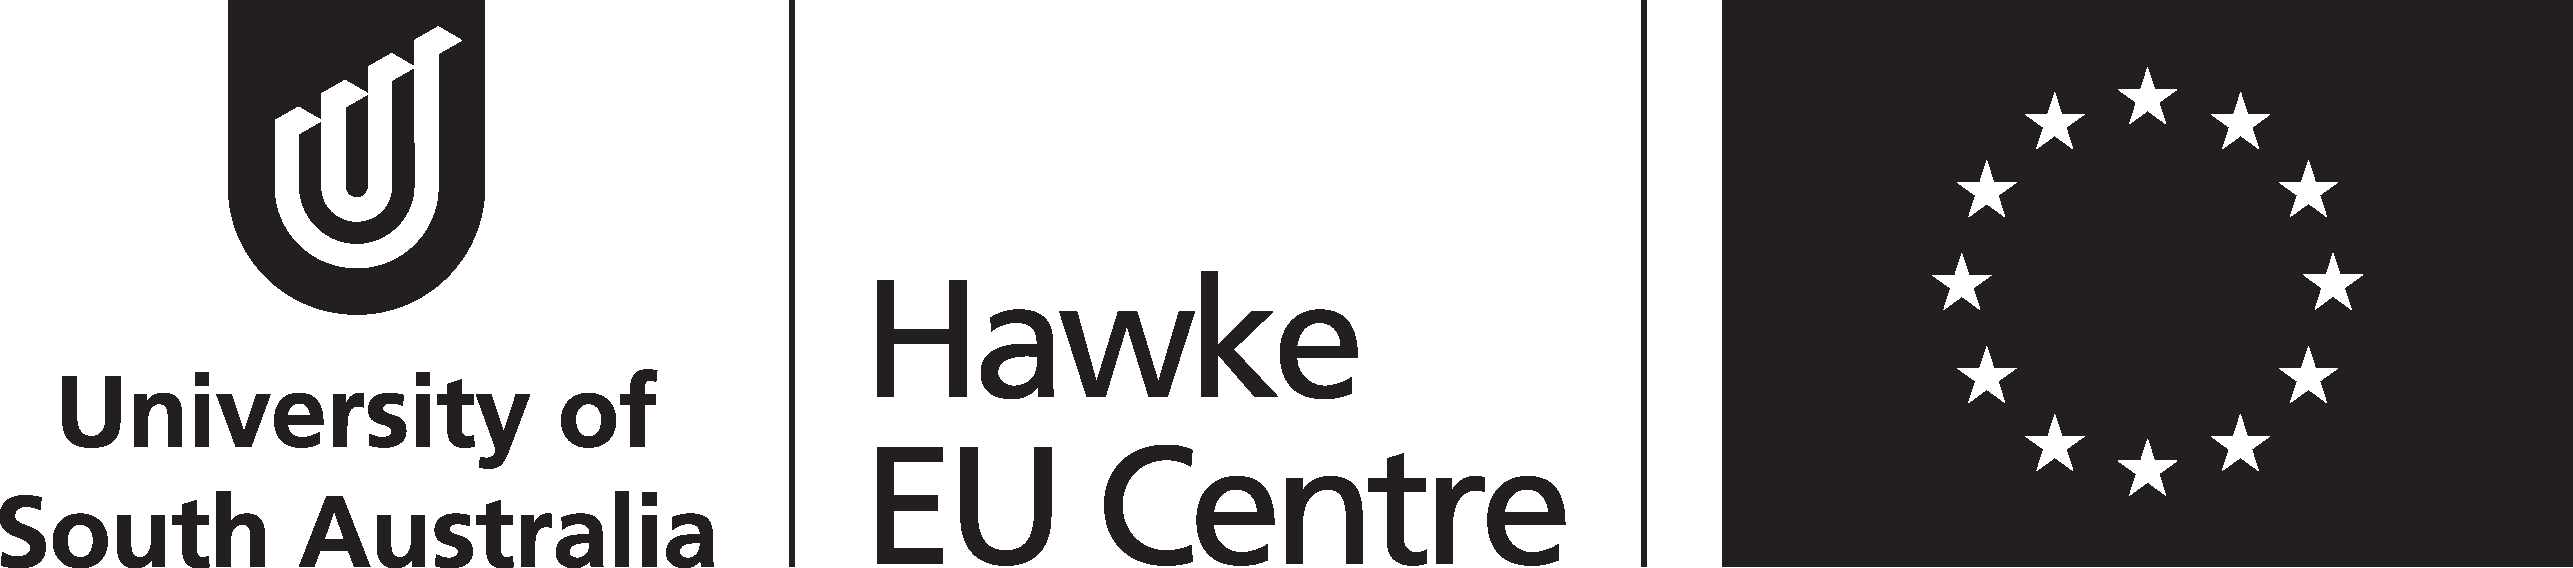 Hawke EU Centre